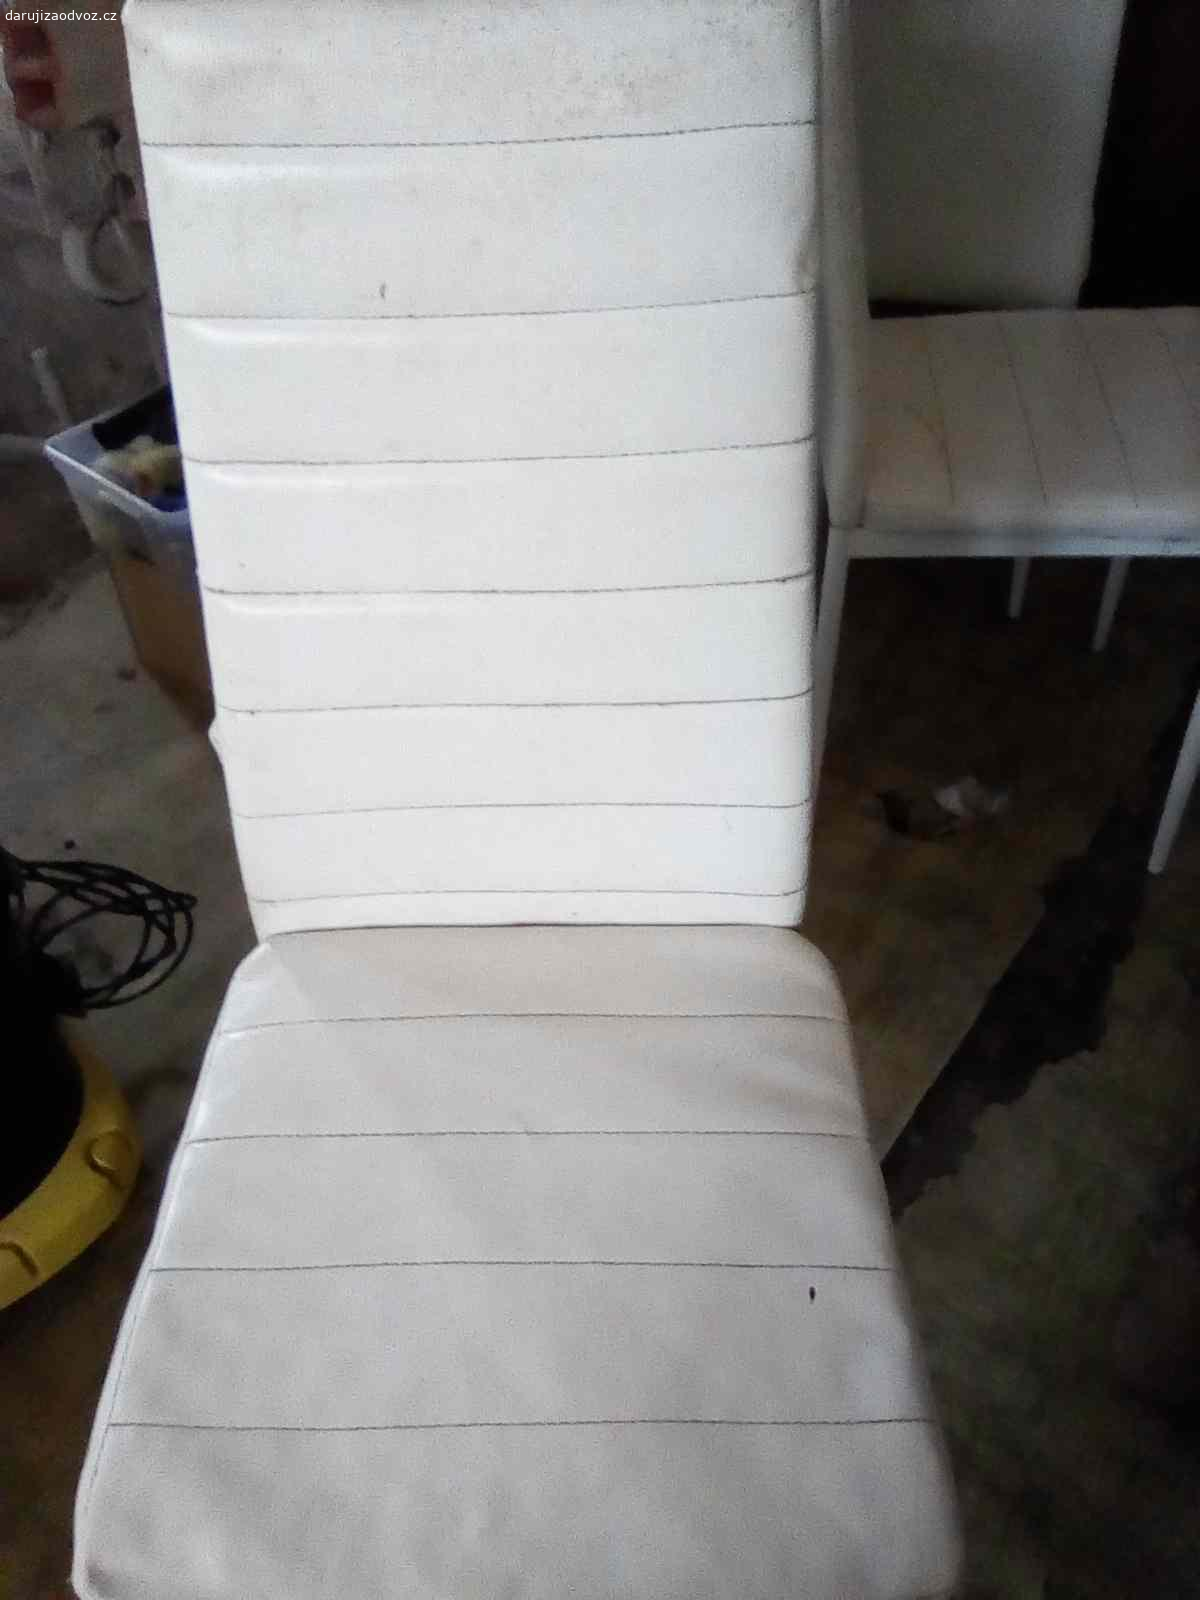 Daruji židle. Daruji pět použitých židlí. Kovová konstrukce potažená umělou kůží. Dvě zezadu mírně odřené. Potah lehce ušpiněný. Můžu zaslat i detailnější fotky.